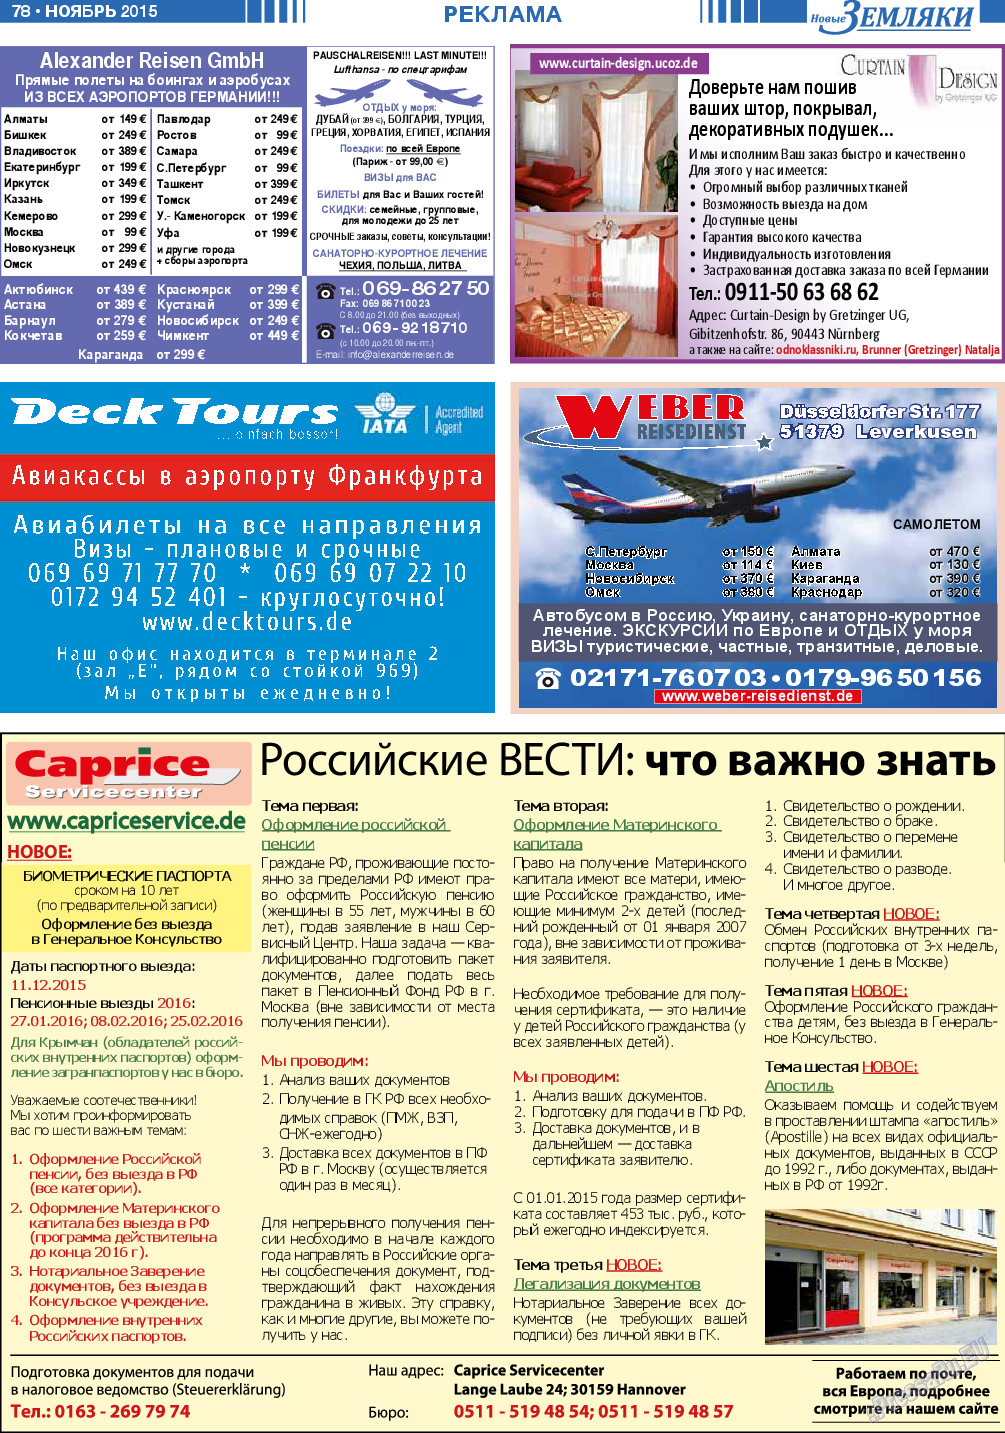 Новые Земляки (газета). 2015 год, номер 11, стр. 78